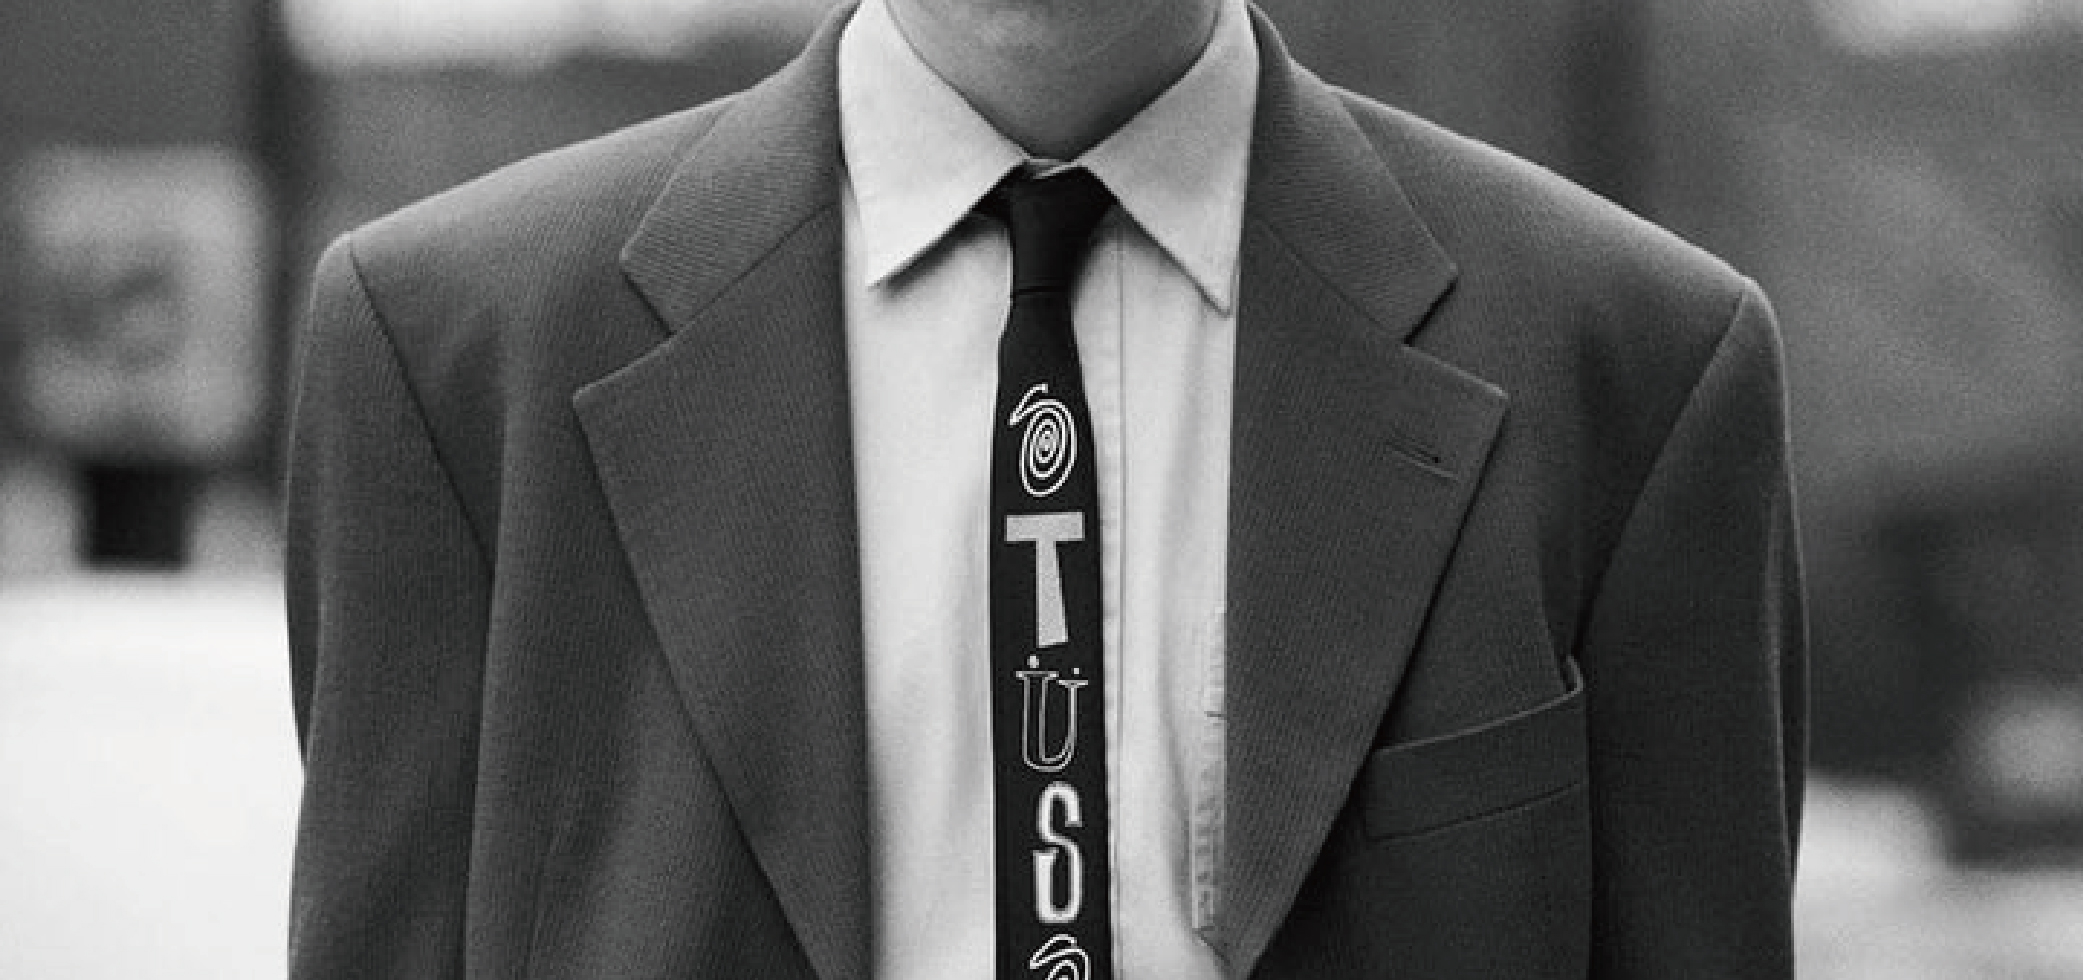 胸前刻意繫上的結：領帶之於正裝的完美標配